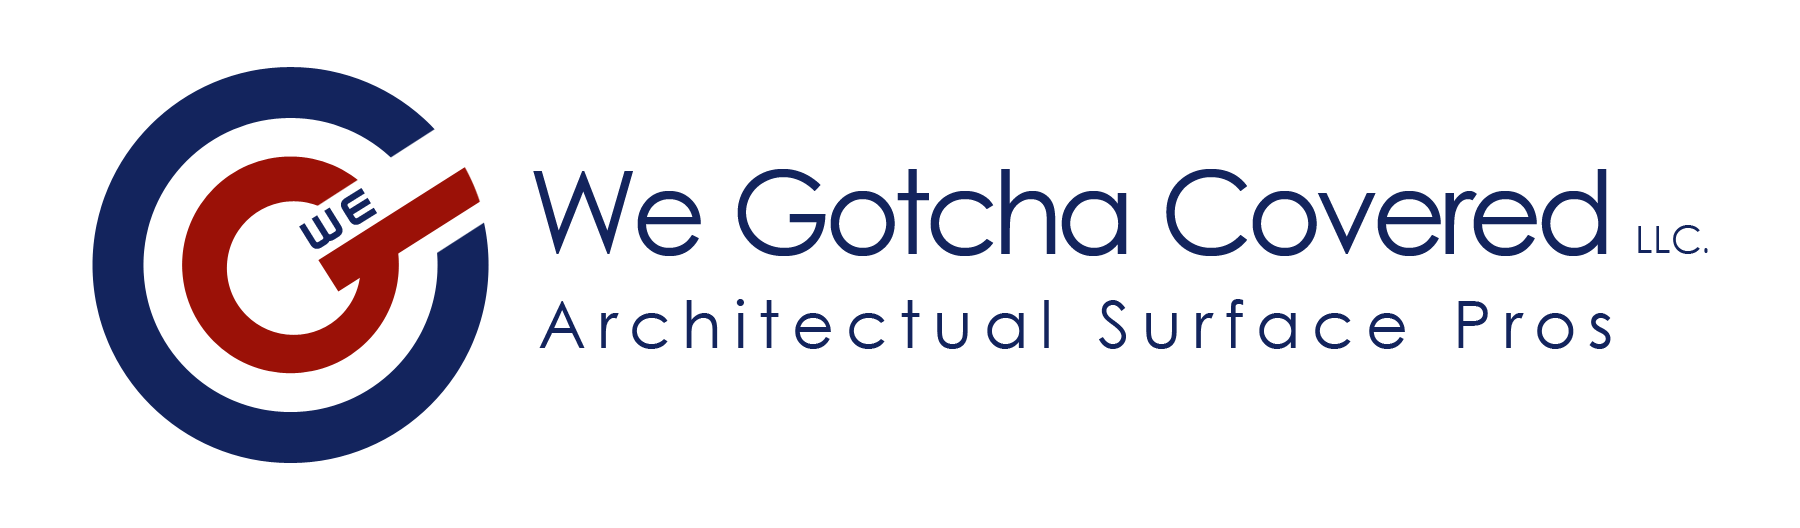 We Gotcha Covered LLC Logo